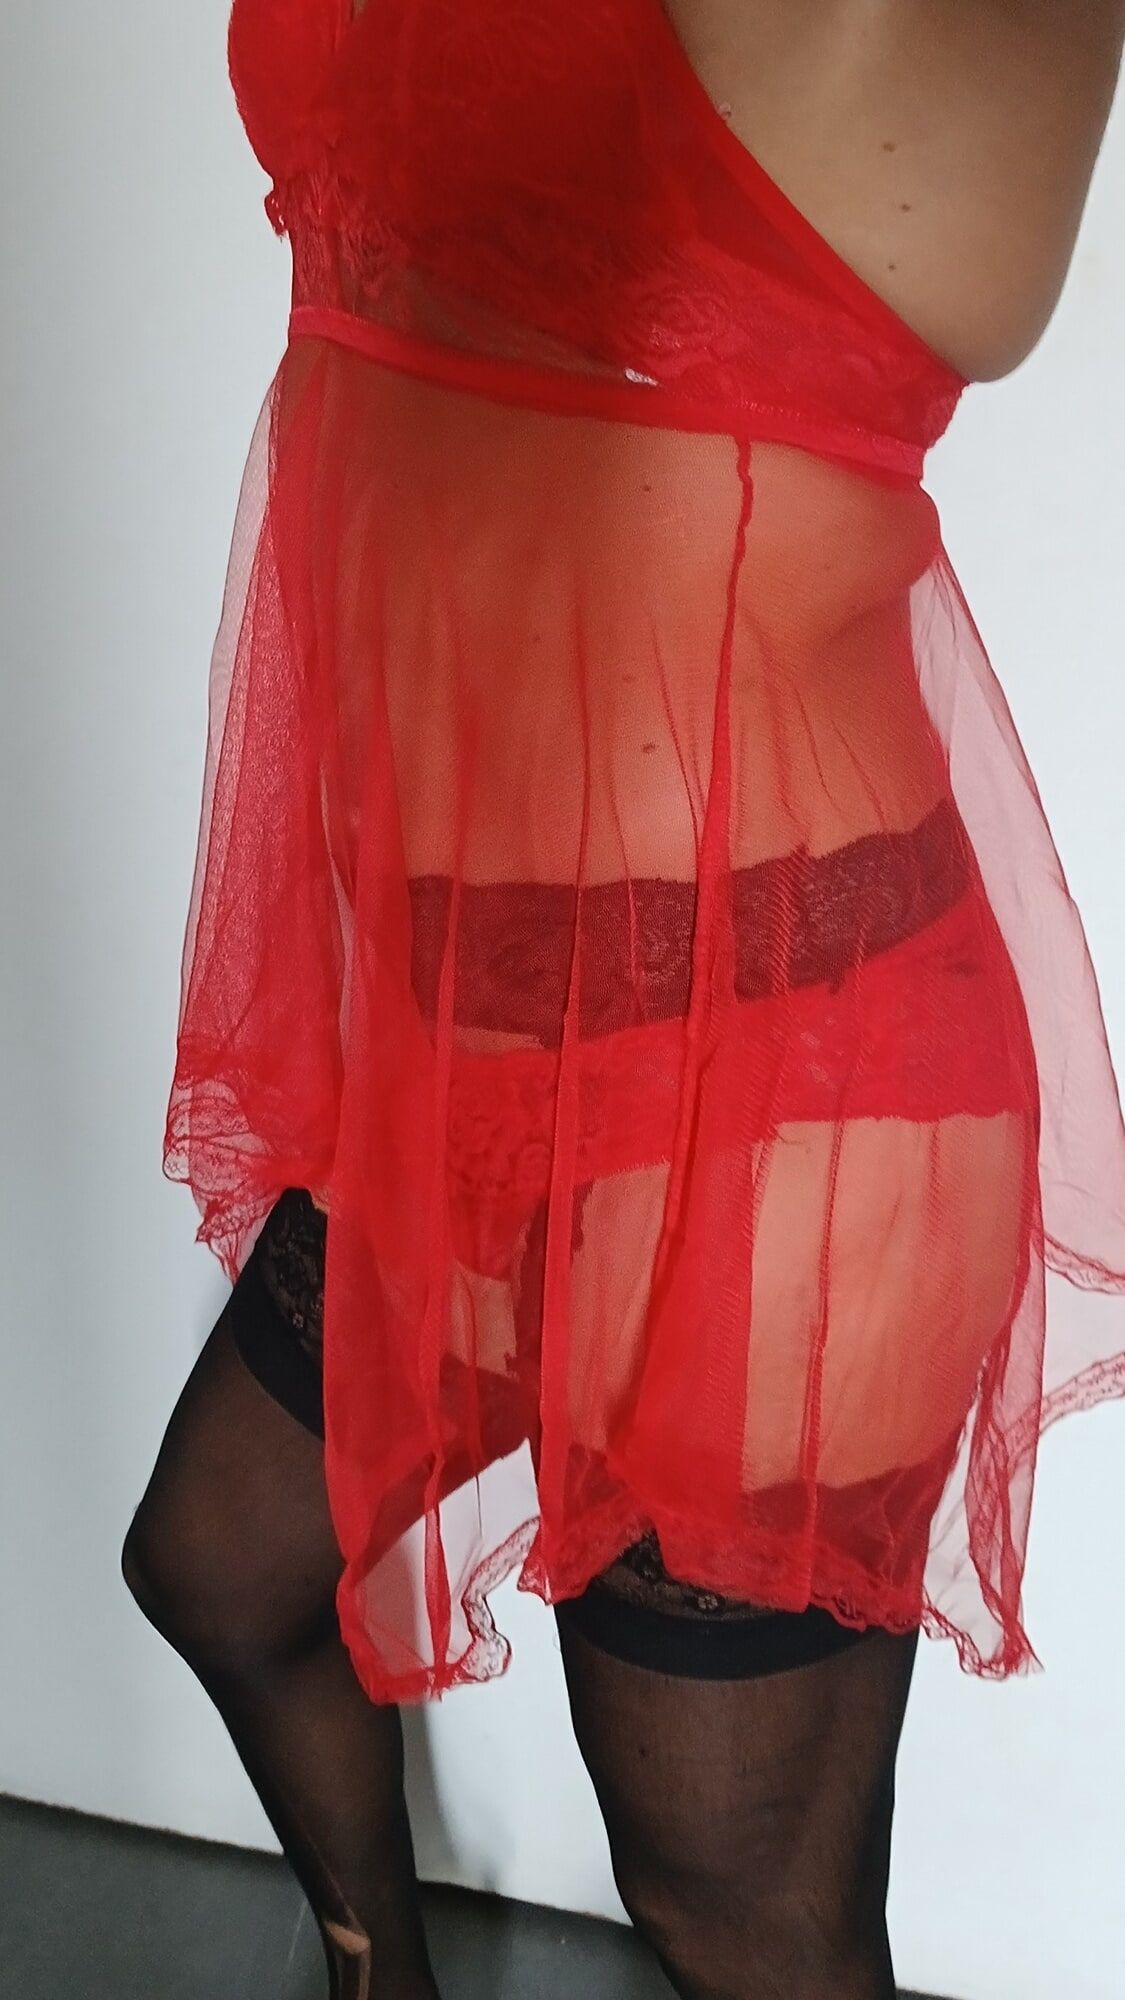 Red nightie black stoking high heels  #6